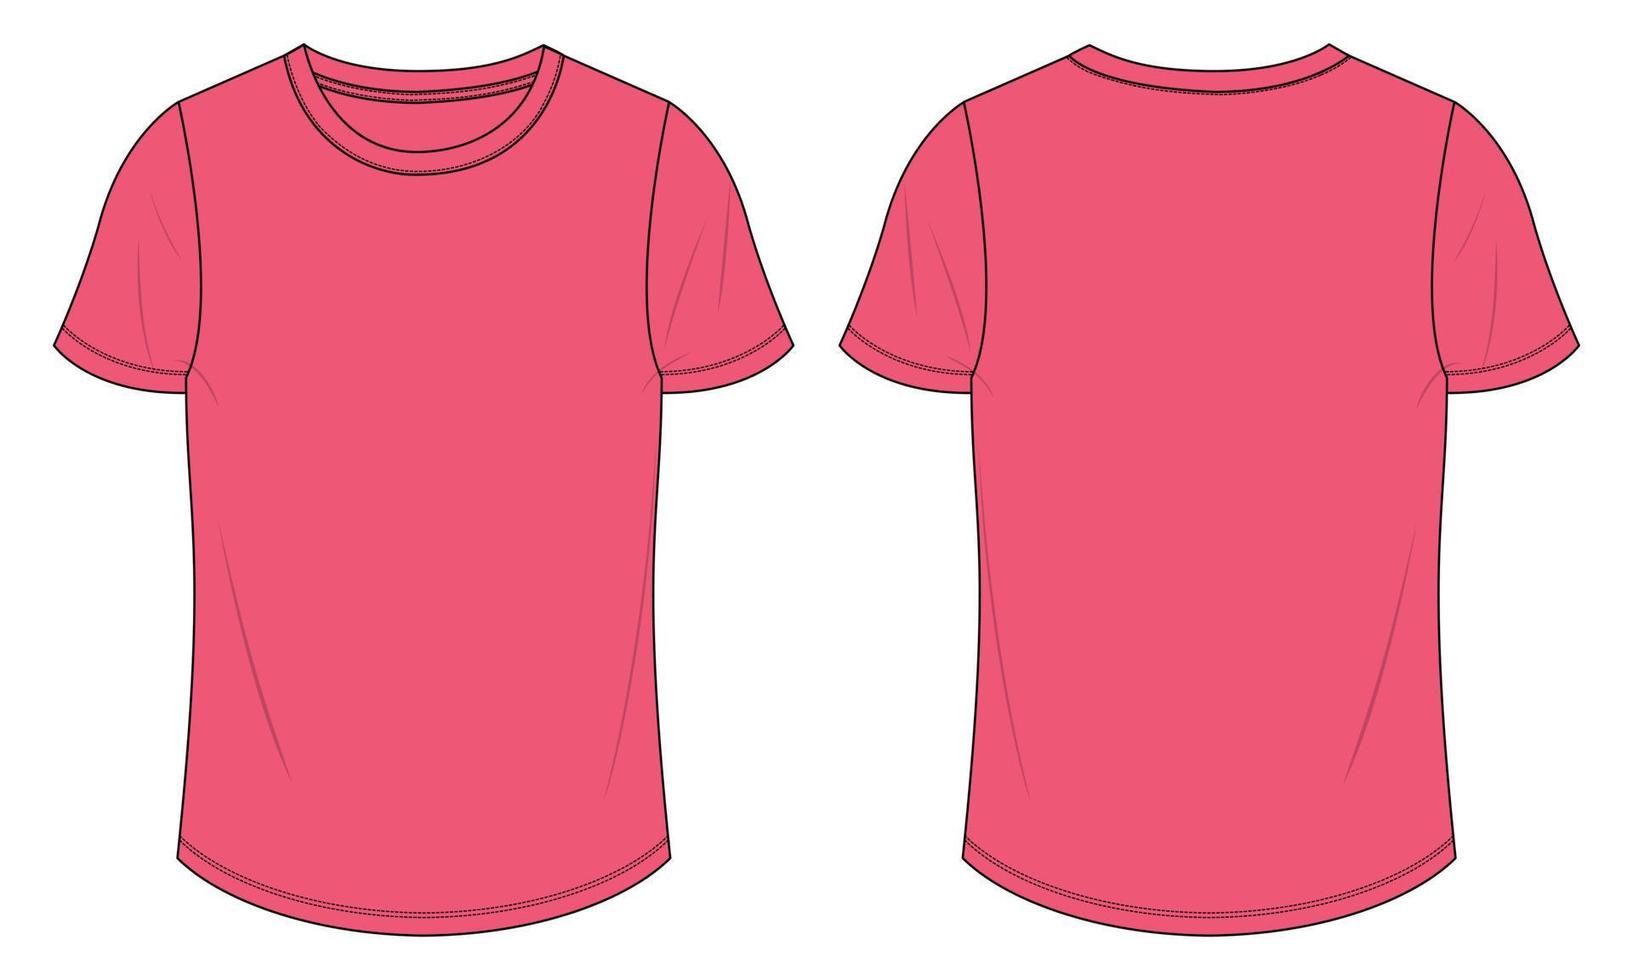 Imágenes de Camiseta Rosa - Descarga gratuita en Freepik